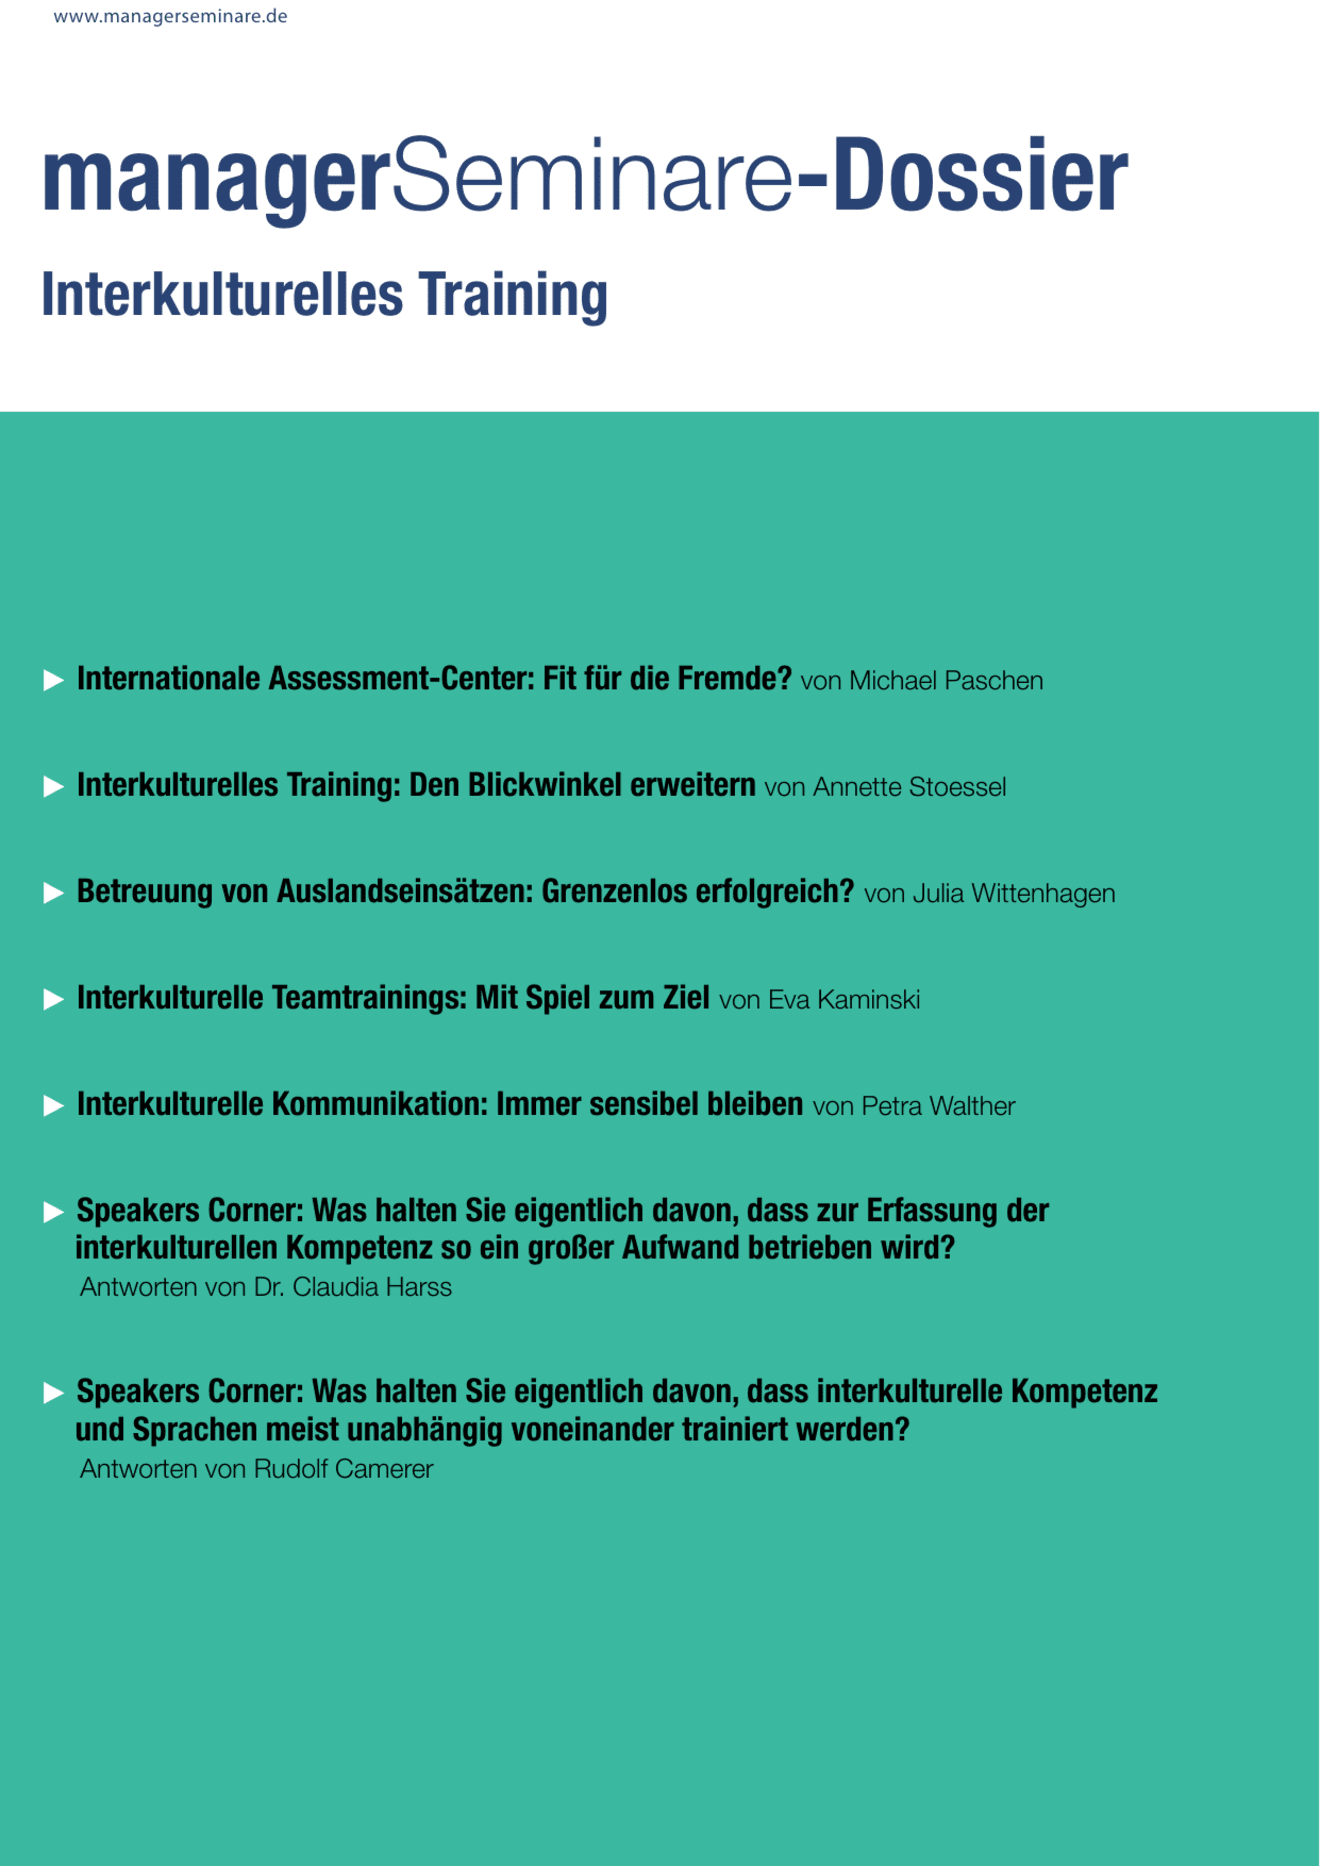 zum Dossier: Interkulturelles Training